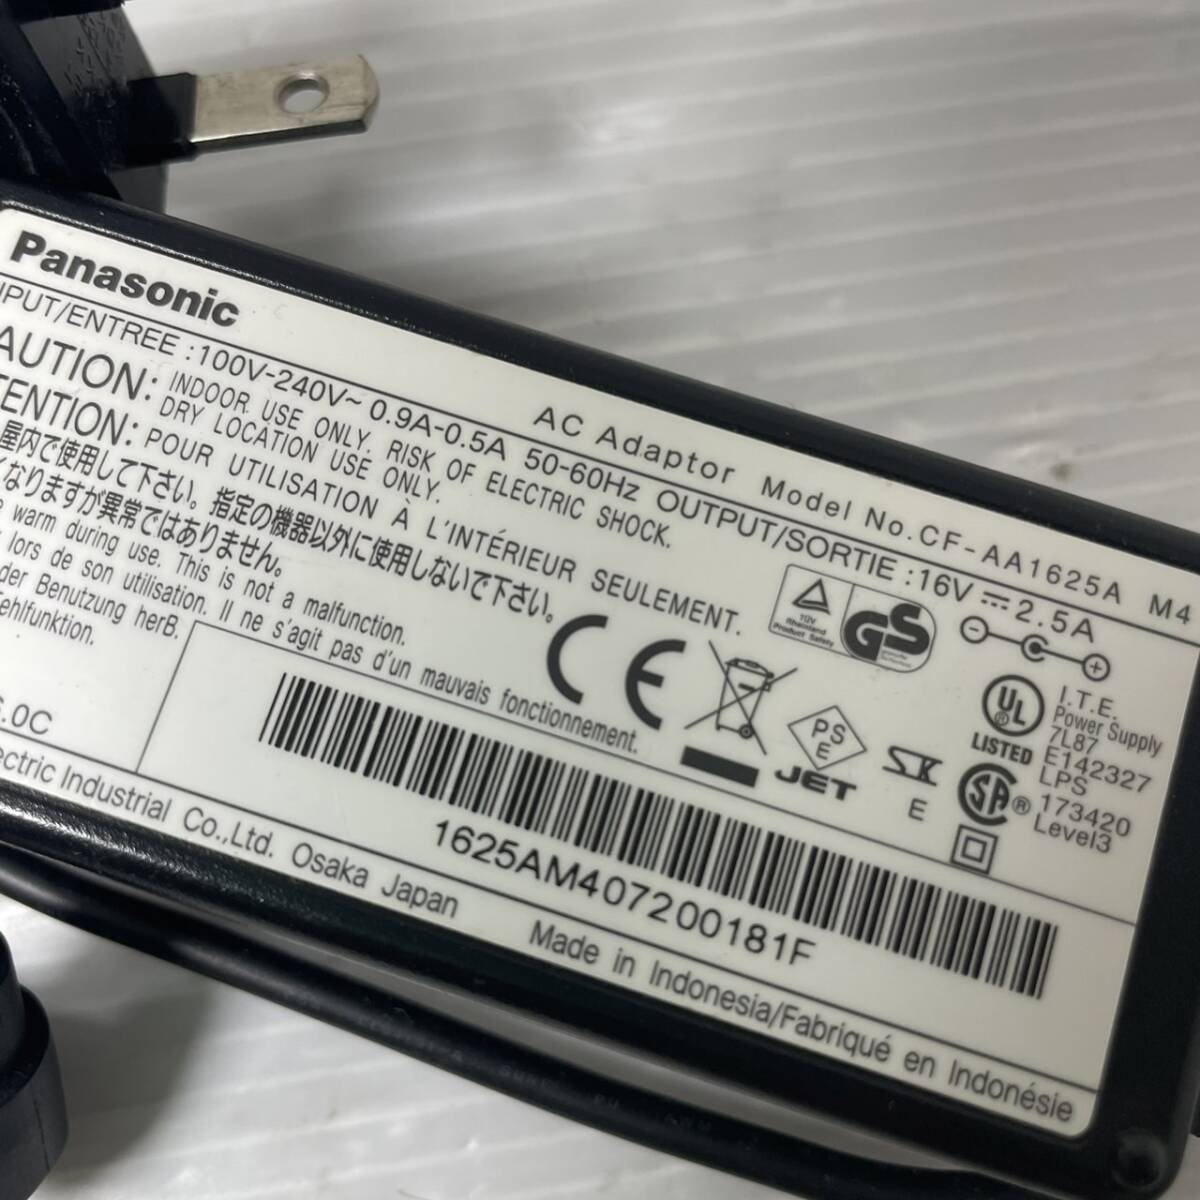 【国内発送】Panasonicパナソニック純正 CF-AA1625A M4 ACアダプタ 16V 2.5A 送料込み価格で安心。の画像2